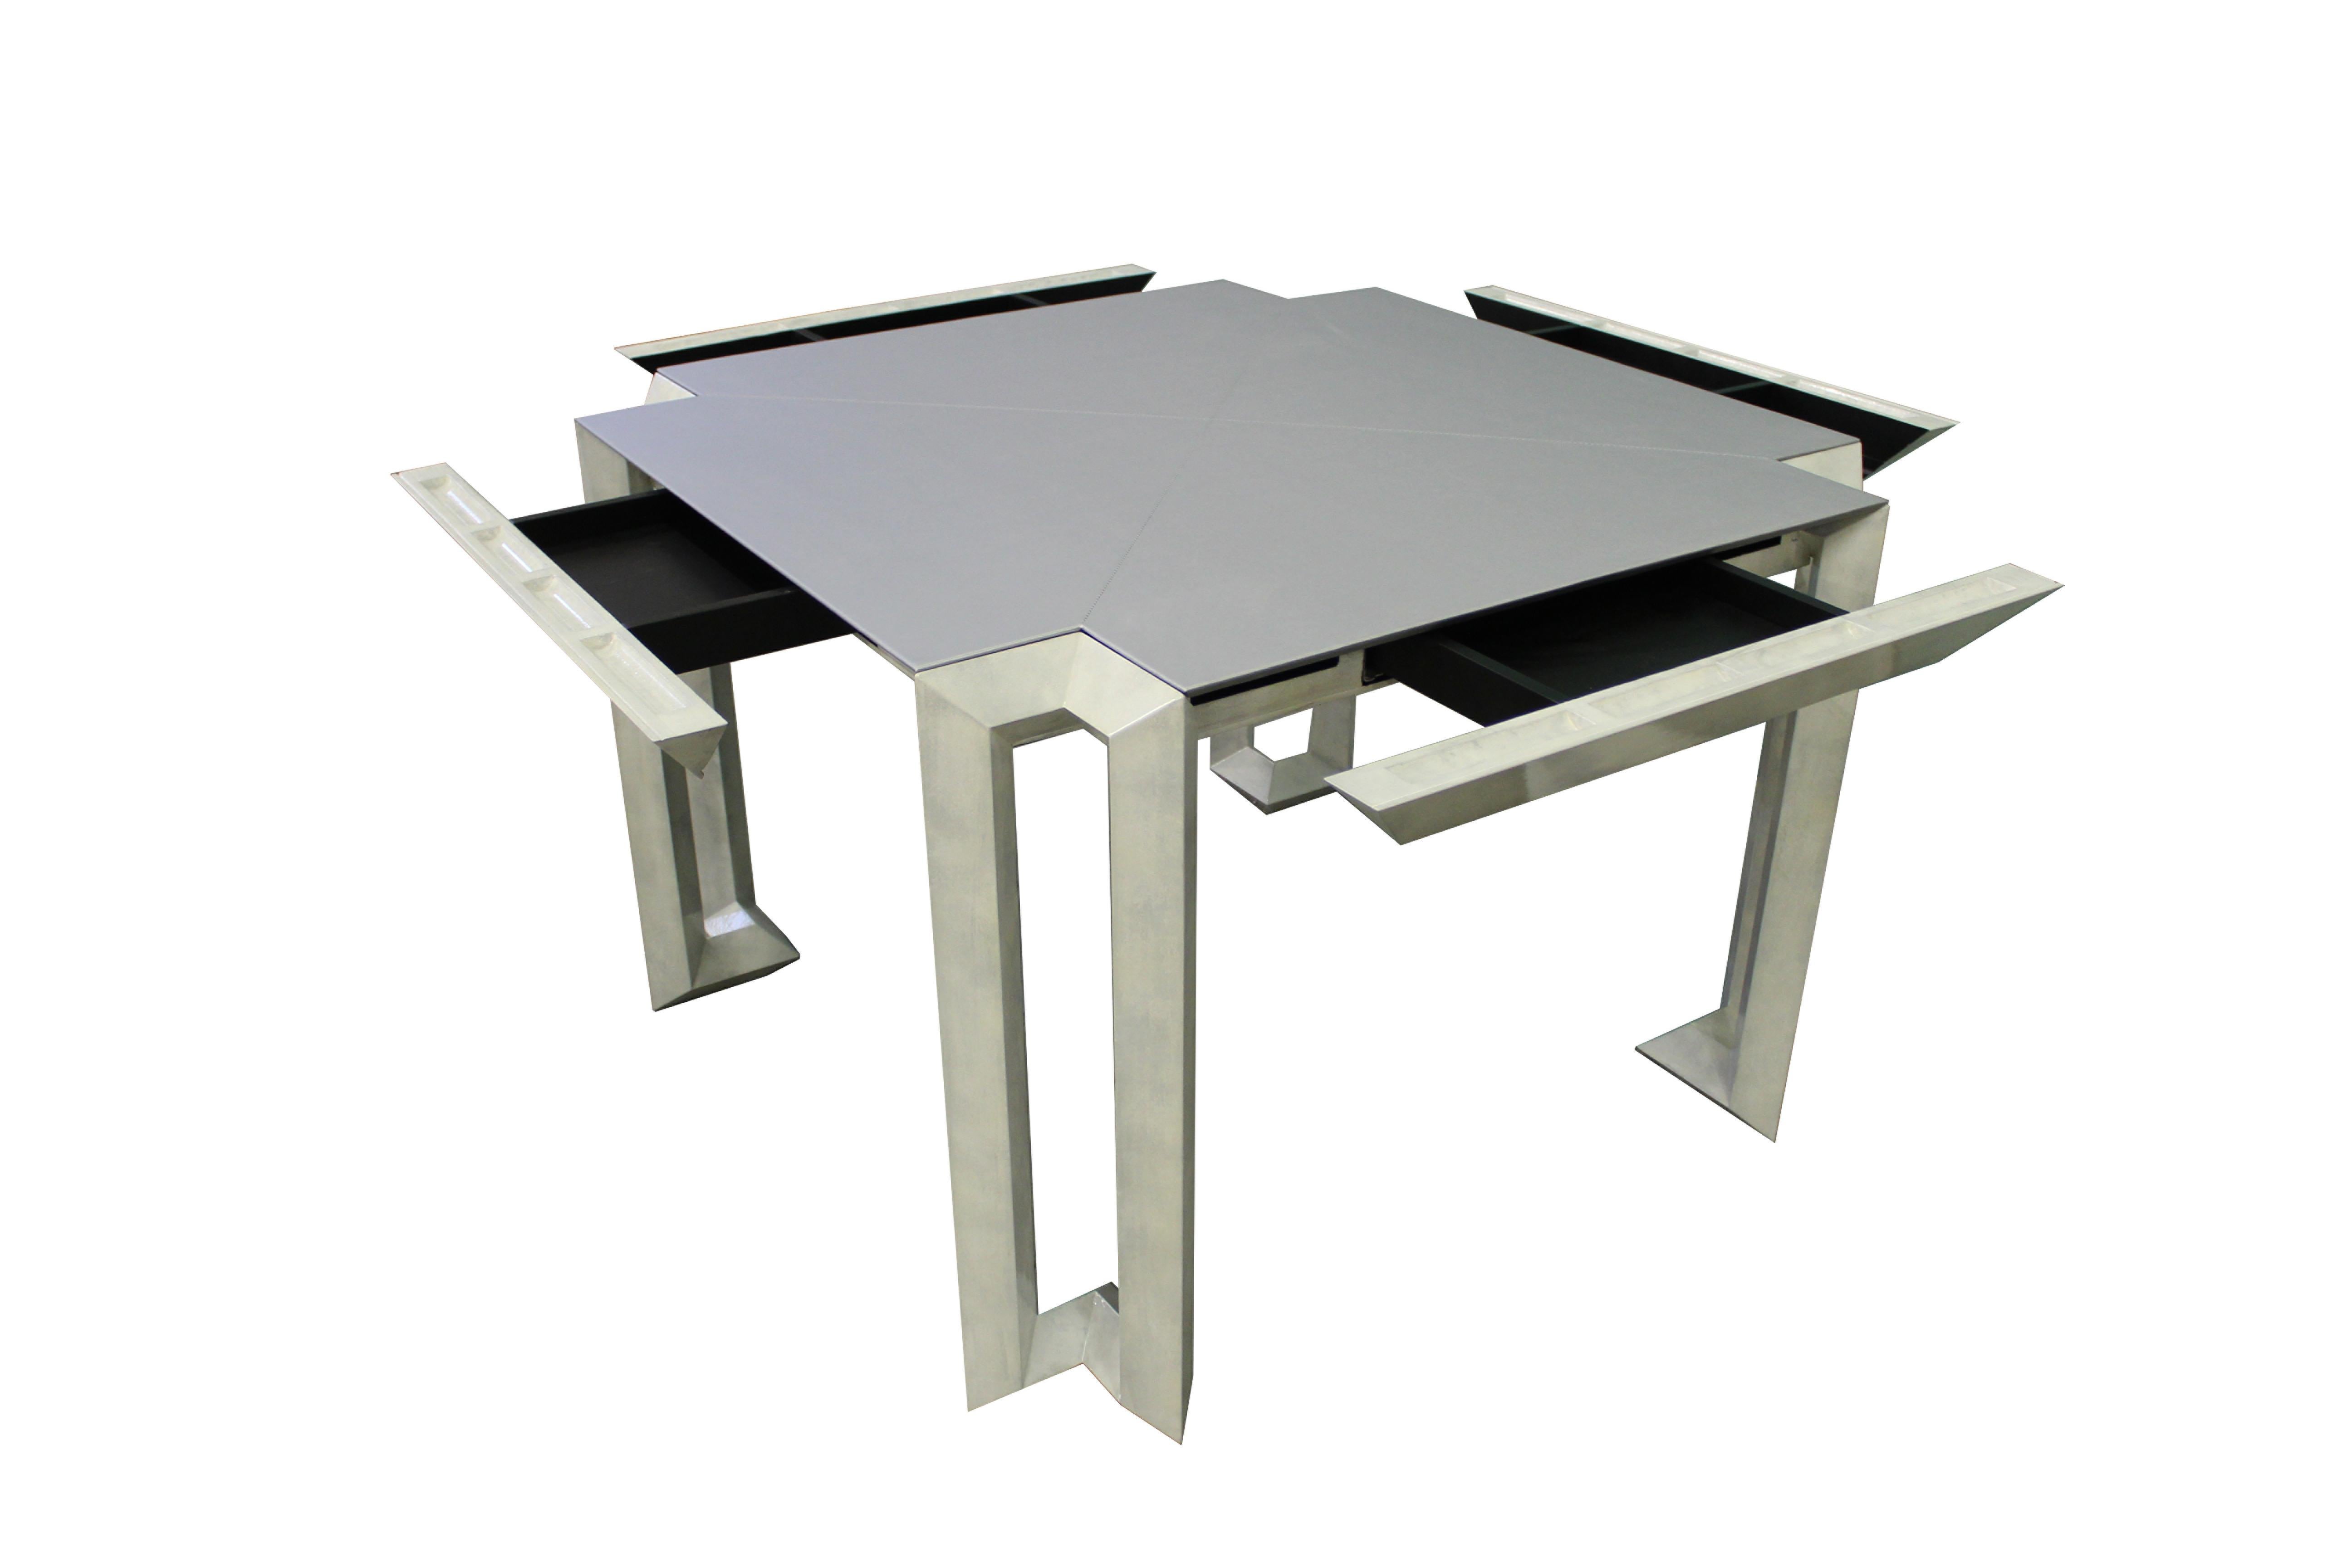 Dieser quadratische Tisch ist nicht nur eine Fläche für Ihre Lieblingsspiele, sondern auch eine praktische Aufbewahrungslösung mit Schubladen an allen vier Seiten. Die Tischplatte ist elegant mit einem weichen und strapazierfähigen Stoff bezogen,